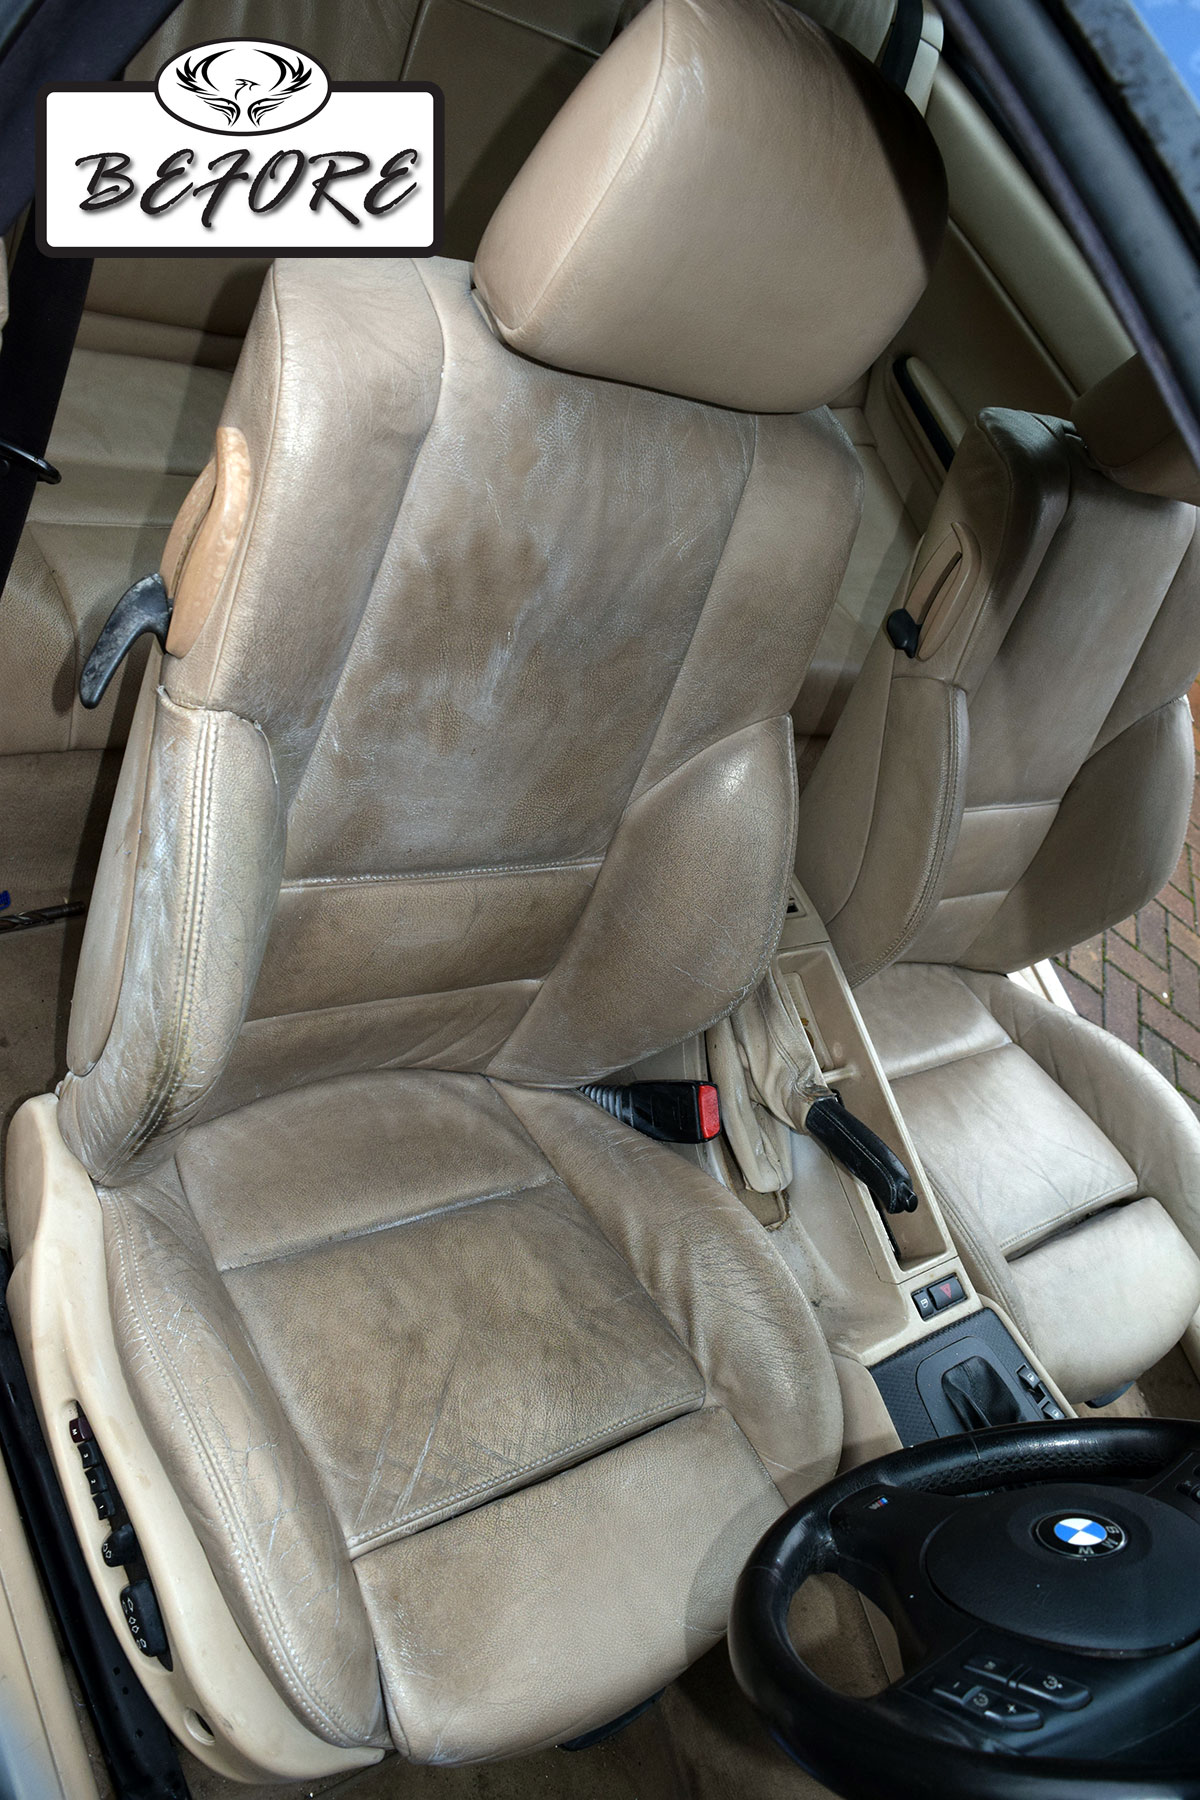 Bmw leather car seat repair